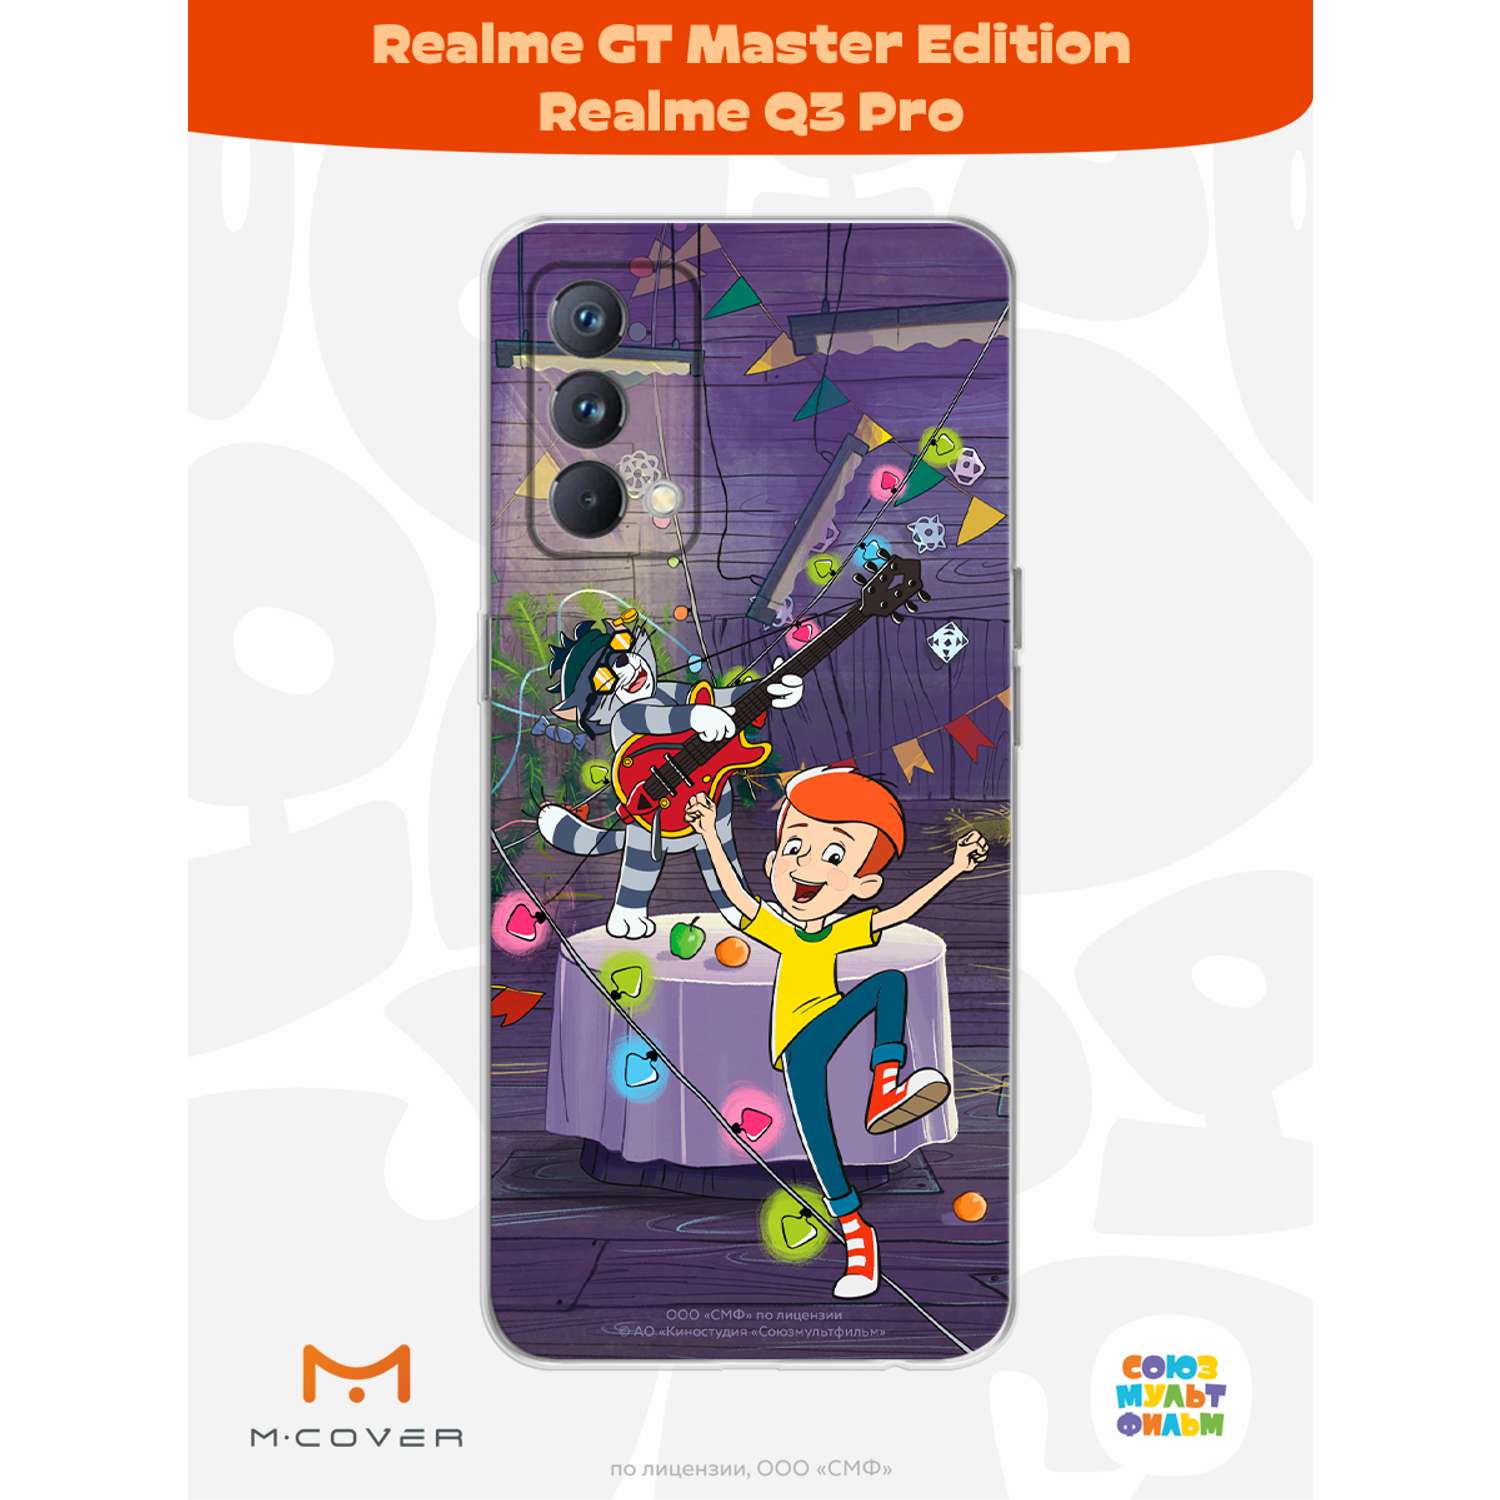 Силиконовый чехол Mcover для смартфона Realme GT Master Edition Q3 Pro Союзмультфильм Матроскин блюз - фото 2